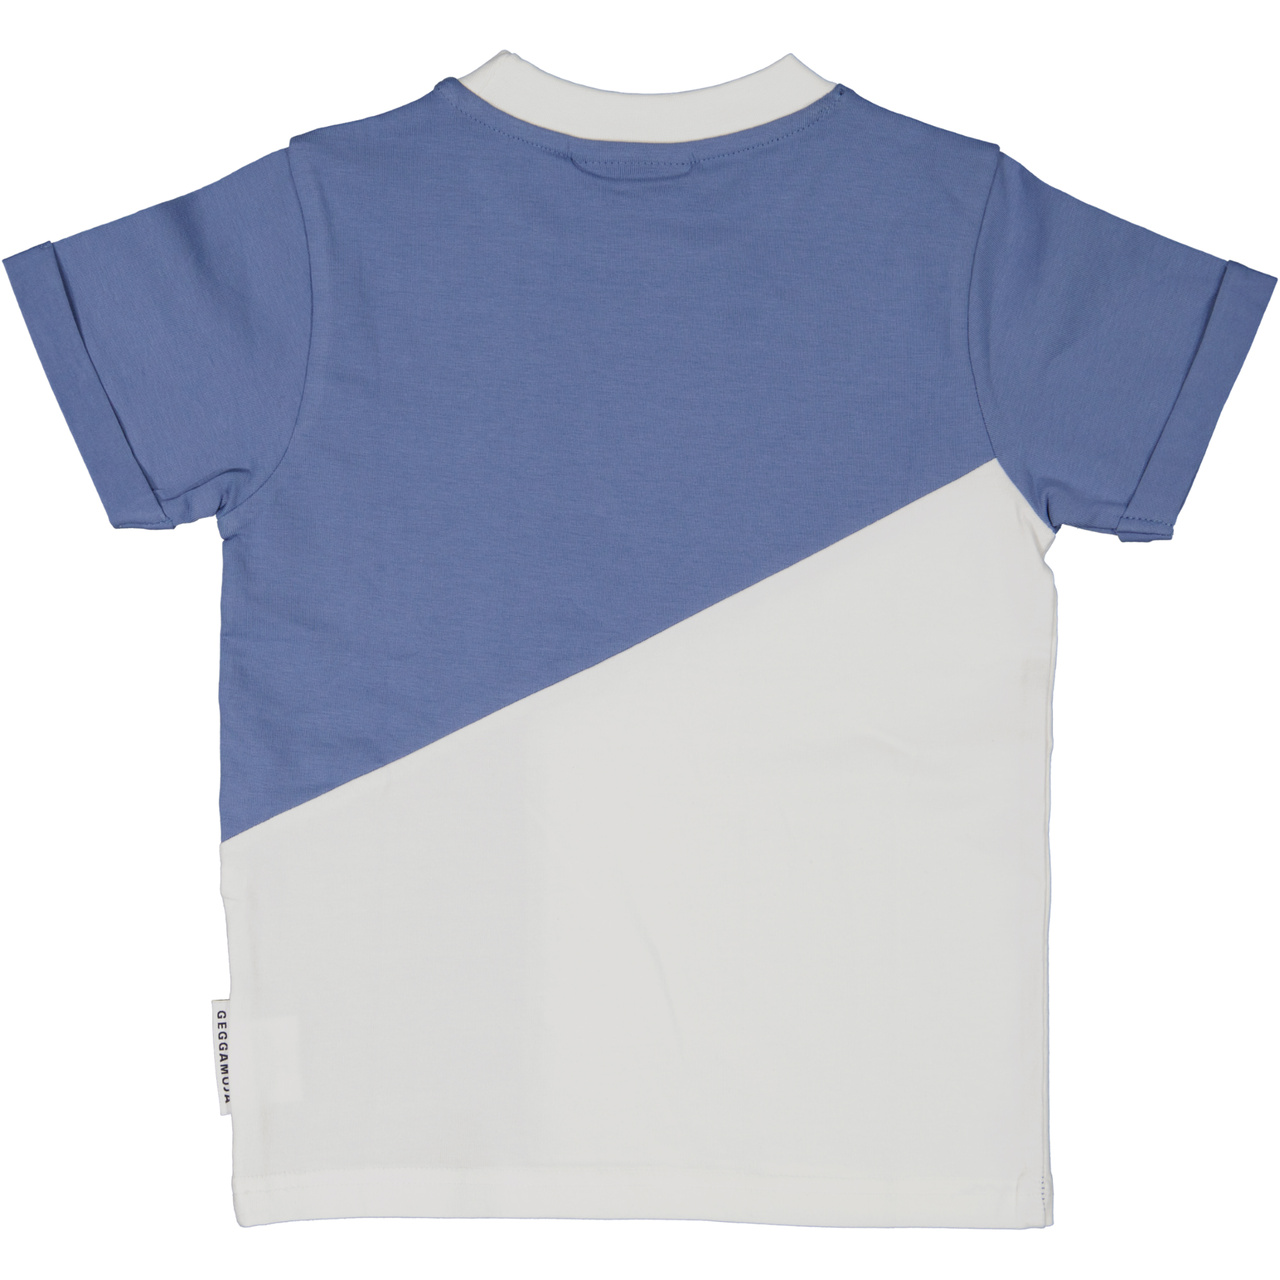 T-shirt Blue 110/116